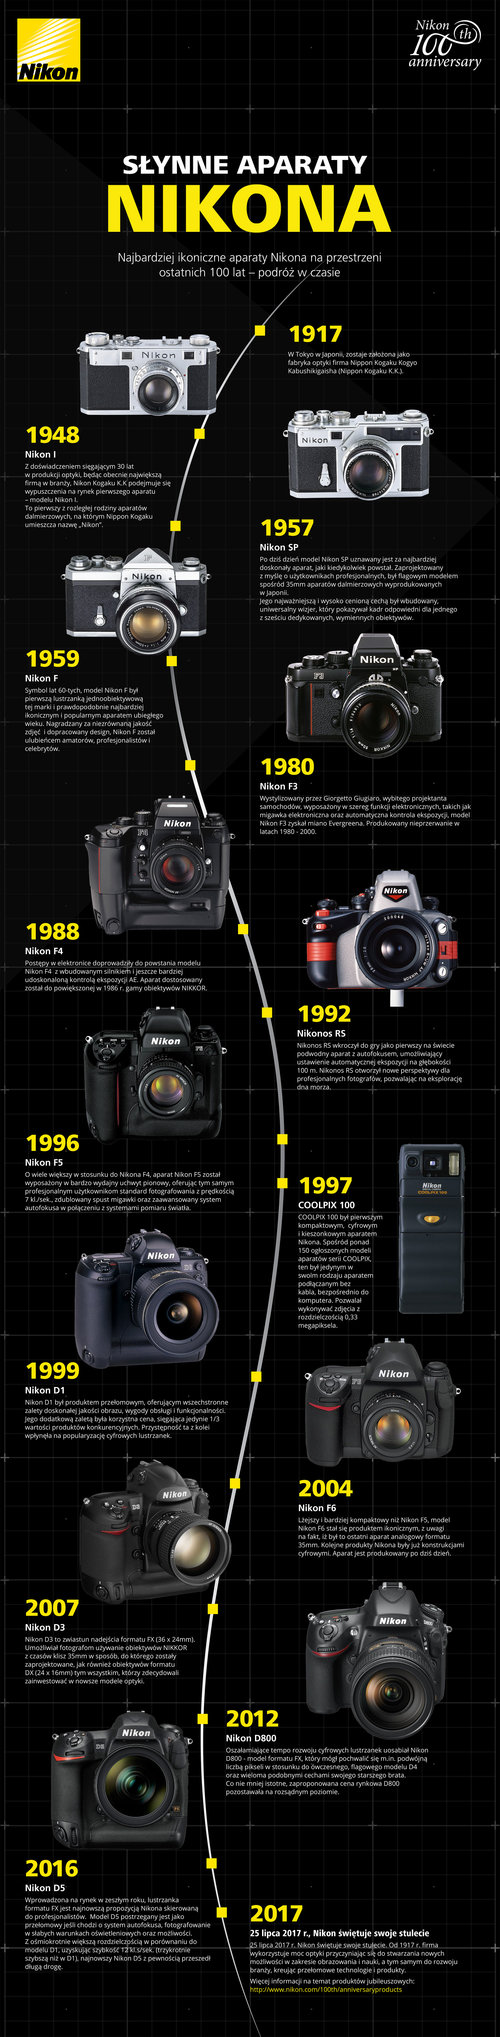 Najbardziej-ikoniczne-aparaty-Nikona